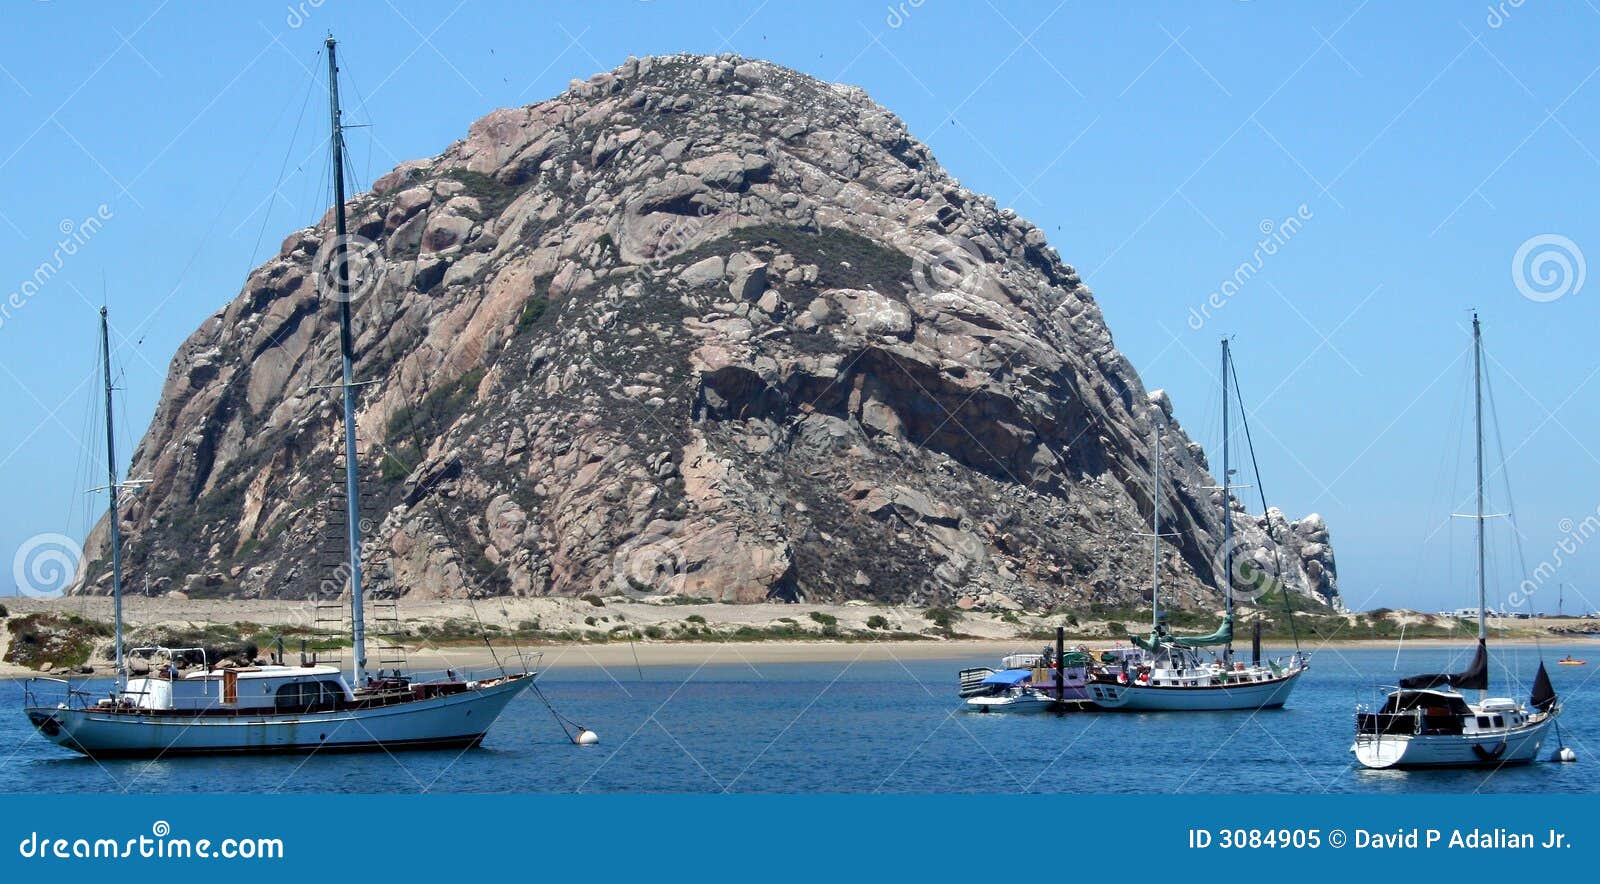 Rocha de Morro com barcos. A rocha central de Morro do marco de Califórnia domina o porto no louro de Morro, Califórnia, com os sailboats amarrados no primeiro plano.